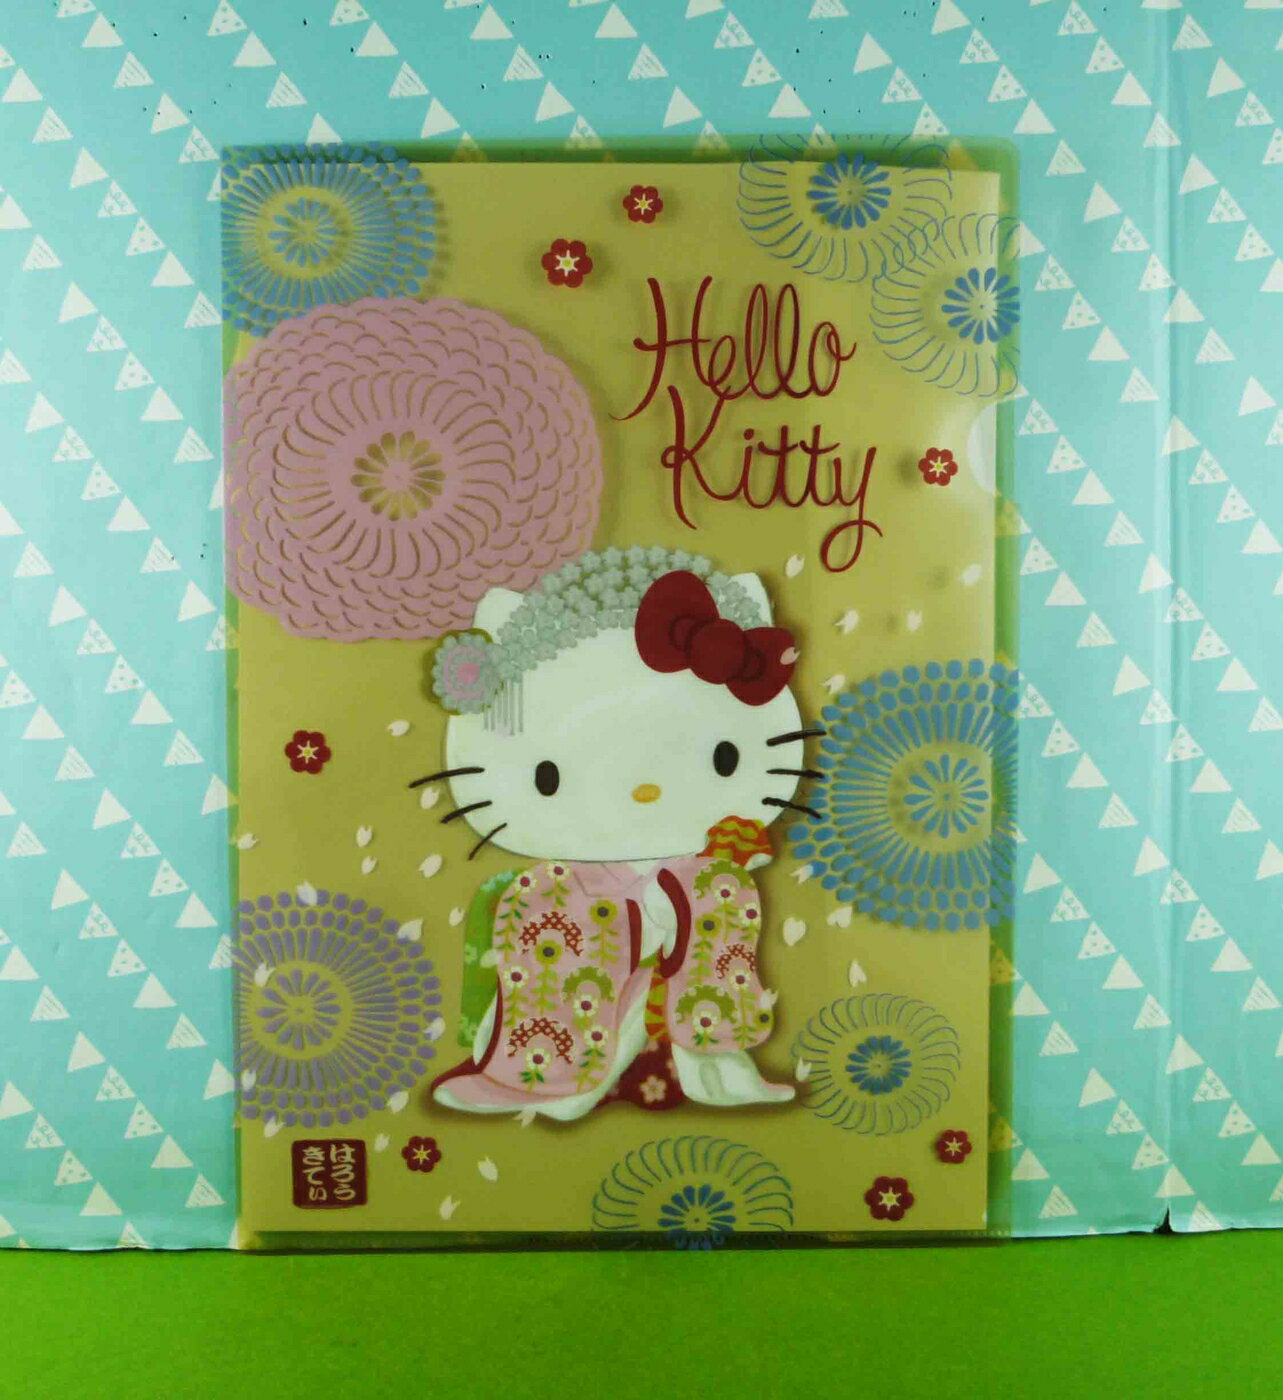 【震撼精品百貨】Hello Kitty 凱蒂貓 文件夾 歌舞妓【共1款】 震撼日式精品百貨